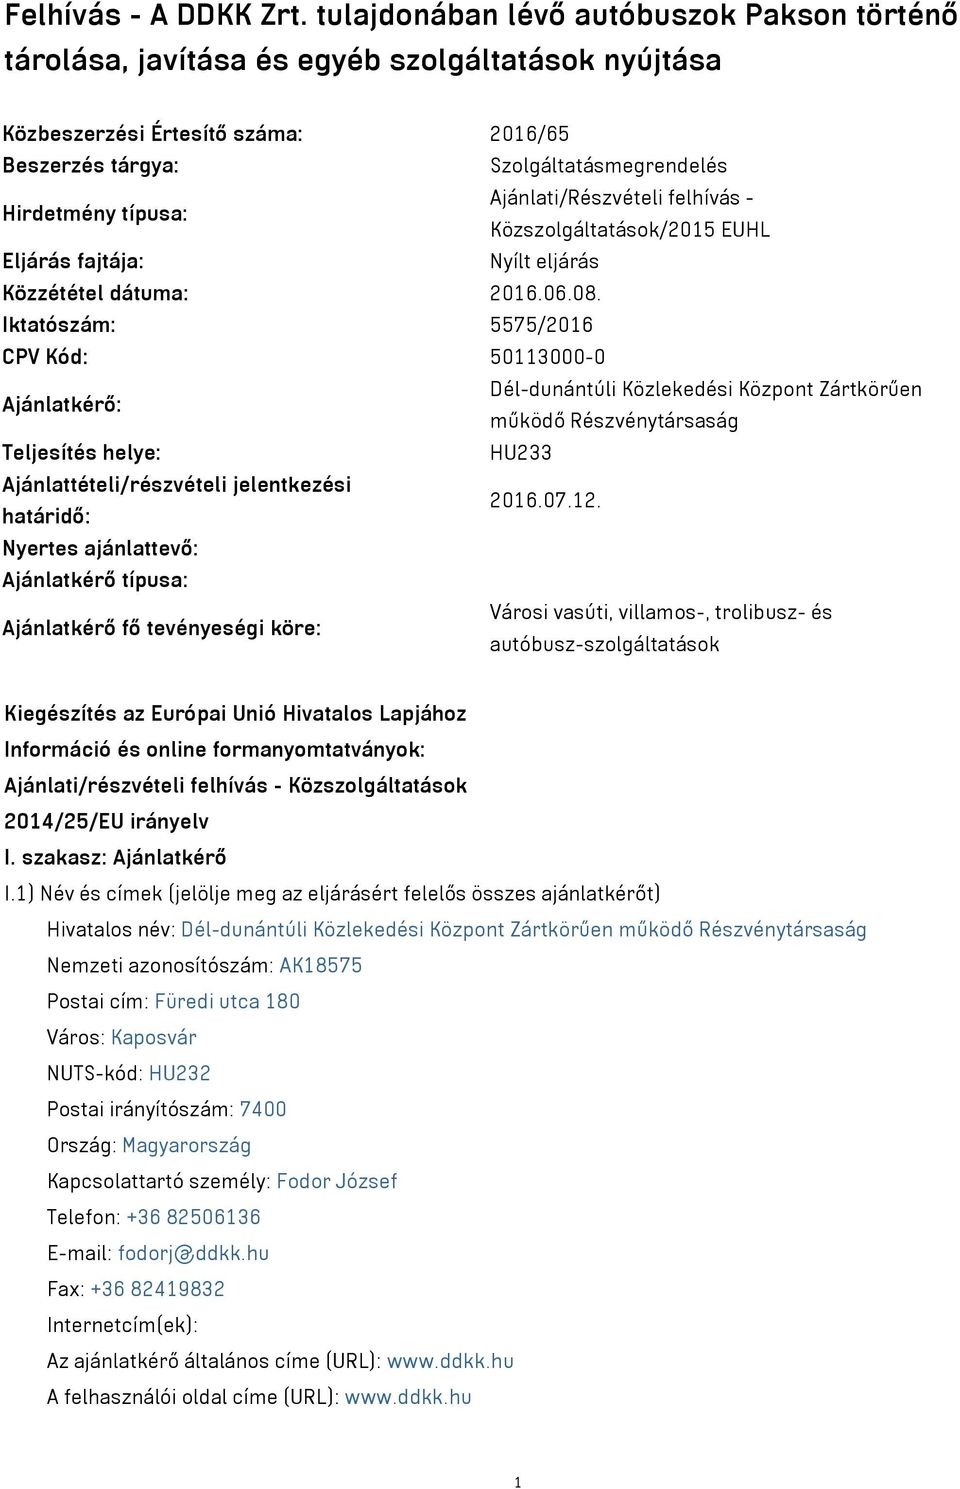 Ajánlati/Részvételi felhívás - Közszolgáltatások/2015 EUHL Eljárás fajtája: Nyílt eljárás Közzététel dátuma: 2016.06.08.